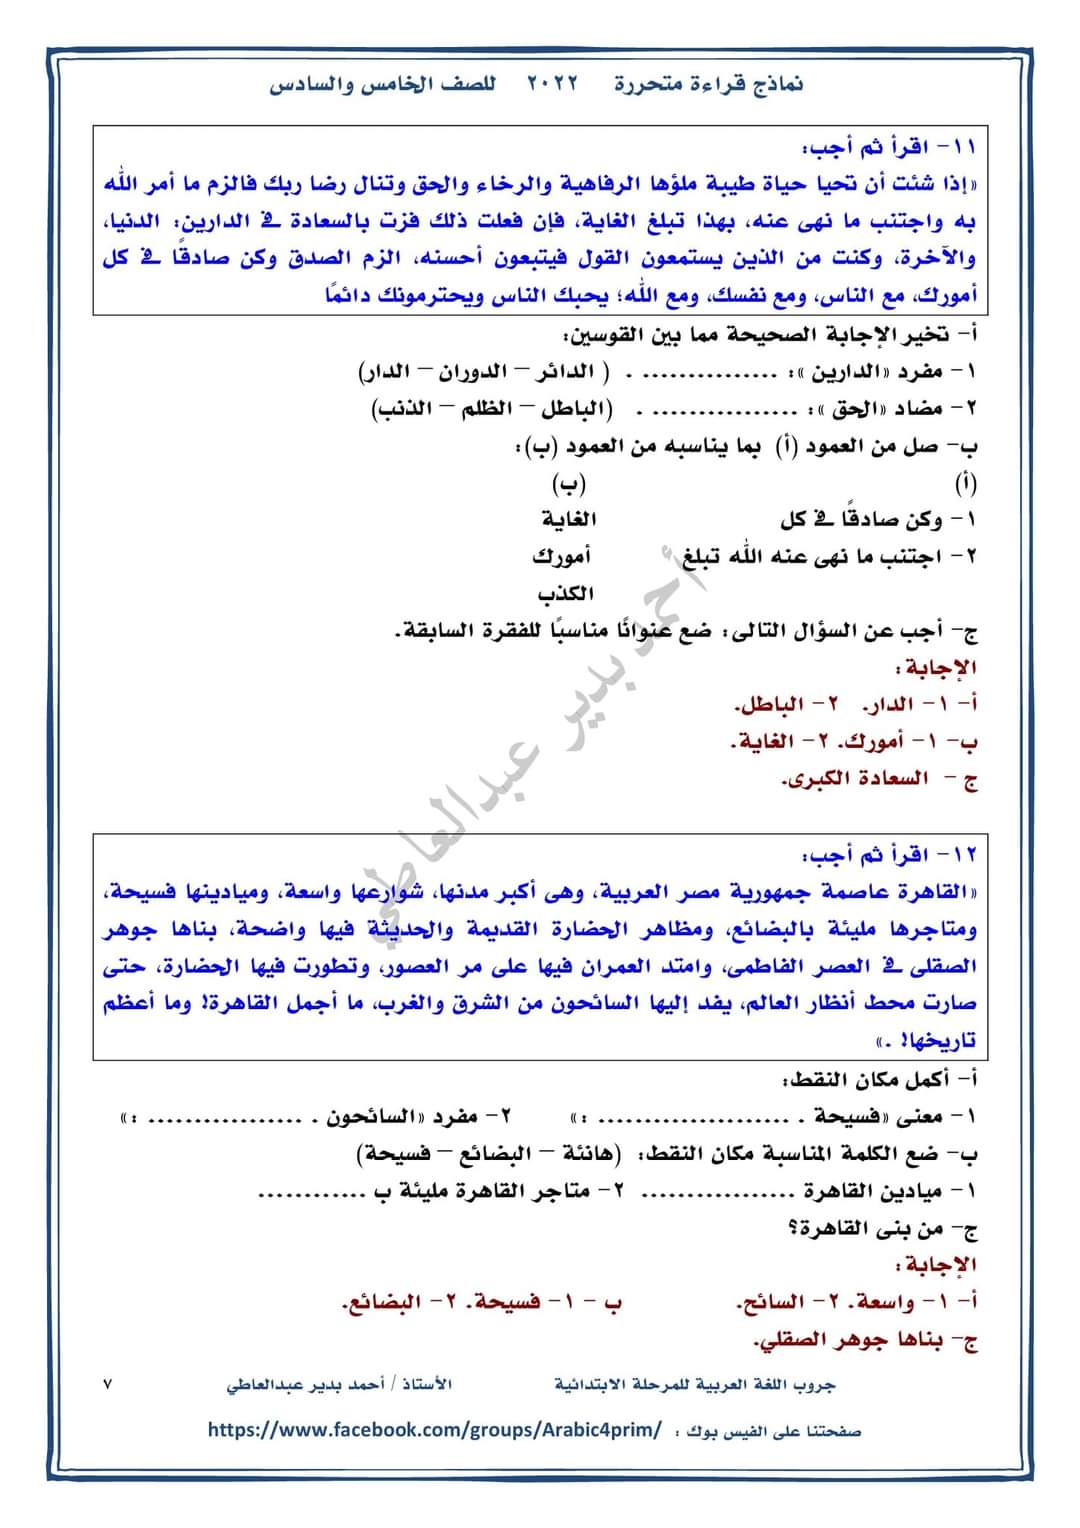 نماذج قراءة متحررة للصف الخامس والسادس الابتدائي - احمد بدير عبد العاطي